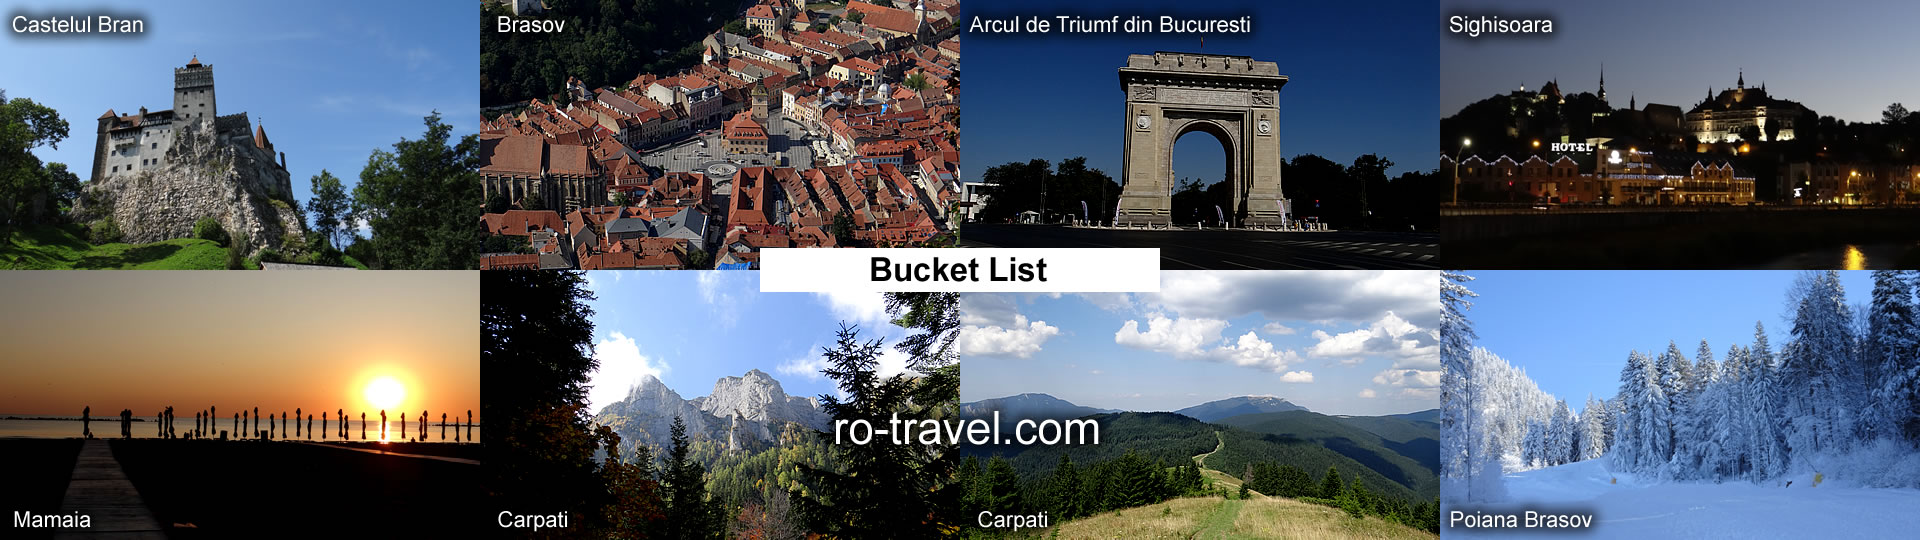 Bucket List Romania